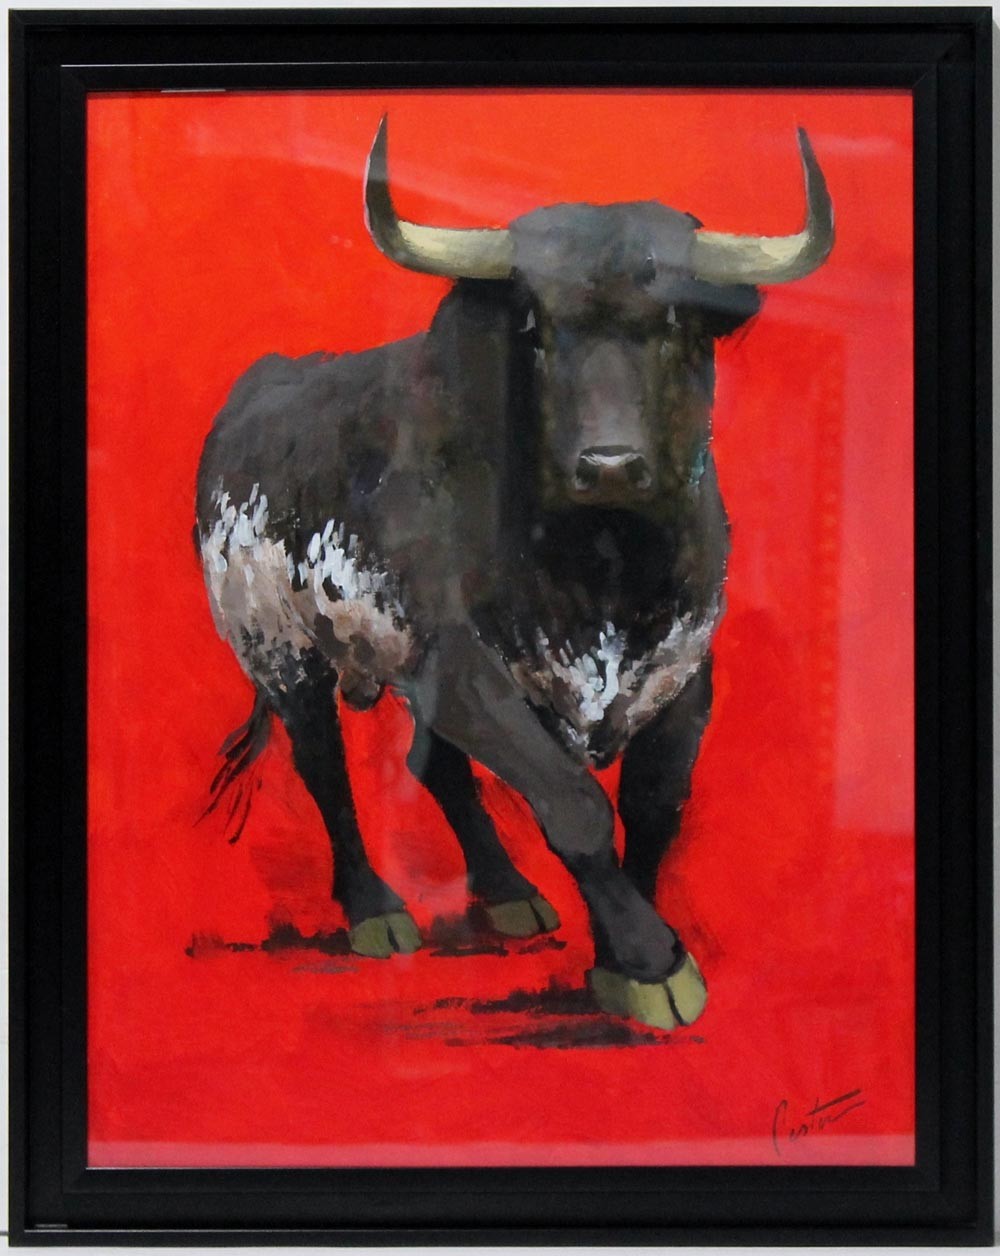 Enrique Pastor: That bull